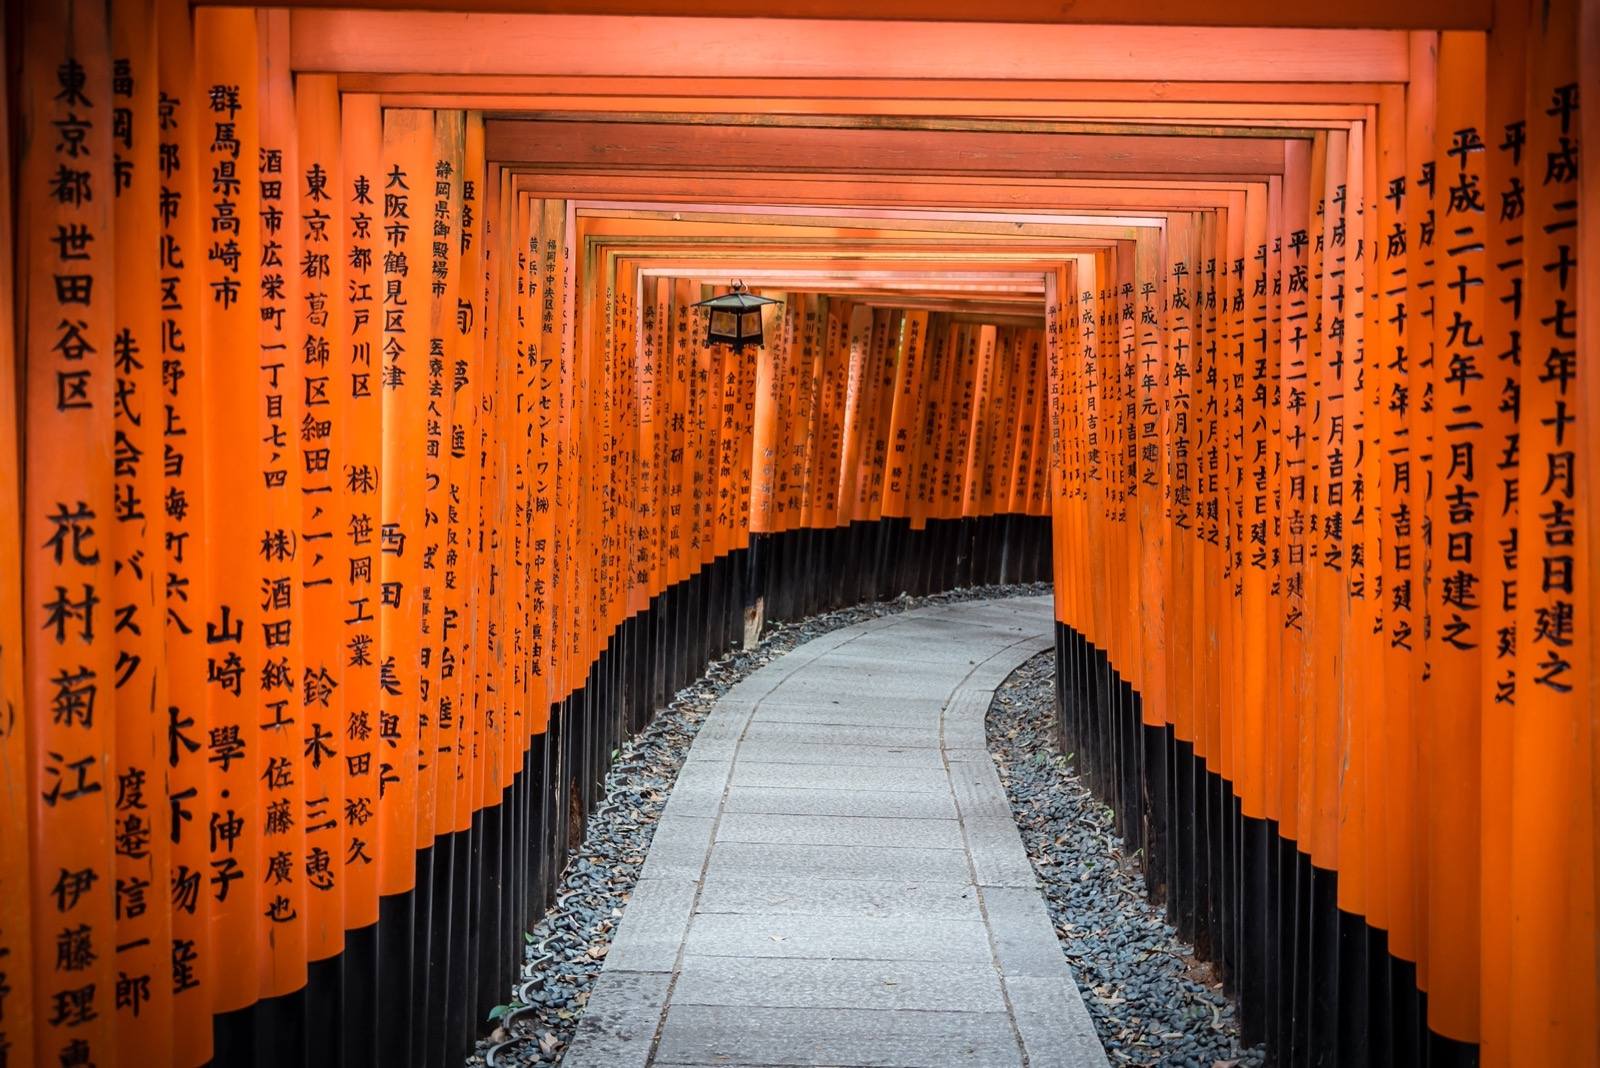 Photo of Fushimi Inari Taisha, Japan (Fushimi Inari-taisha, 2018 by Luca Florio)